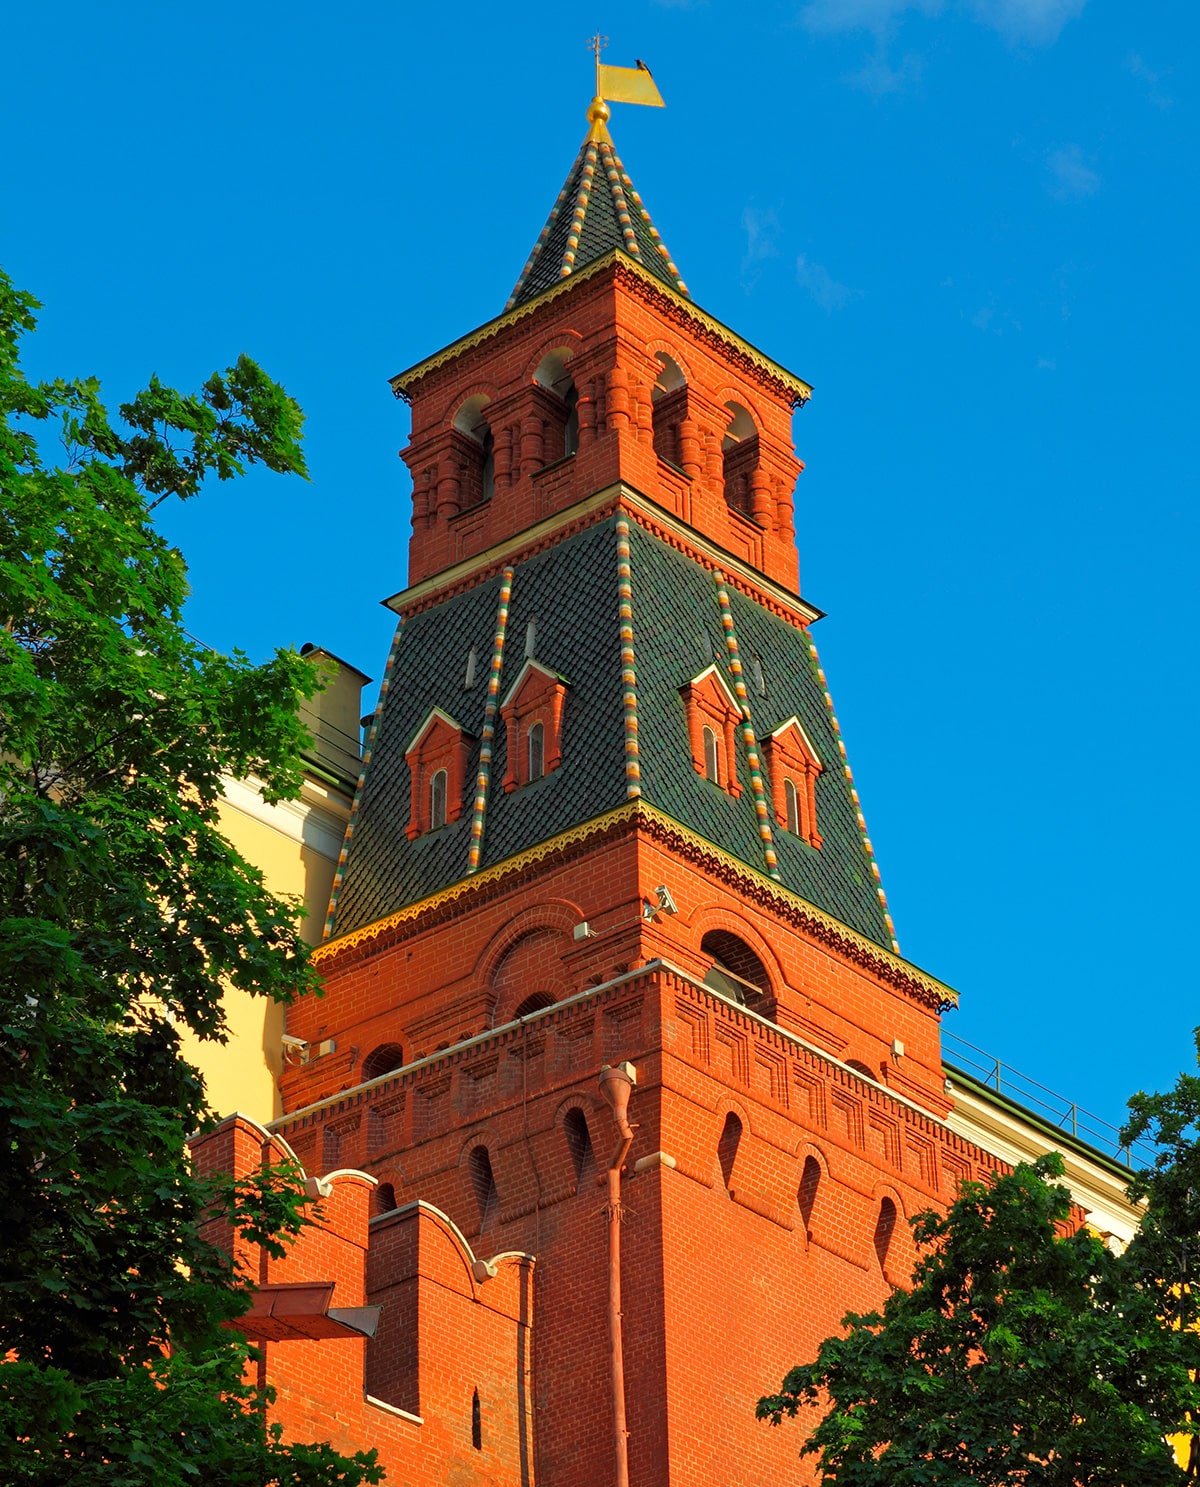 Комендантская (Колымажная) башня. 41,25 м. 1495 год. Неподалёку находился Колымажный двор, а в XIX веке располагавшийся рядом Потешный дворец стал резиденцией коменданта Москвы.